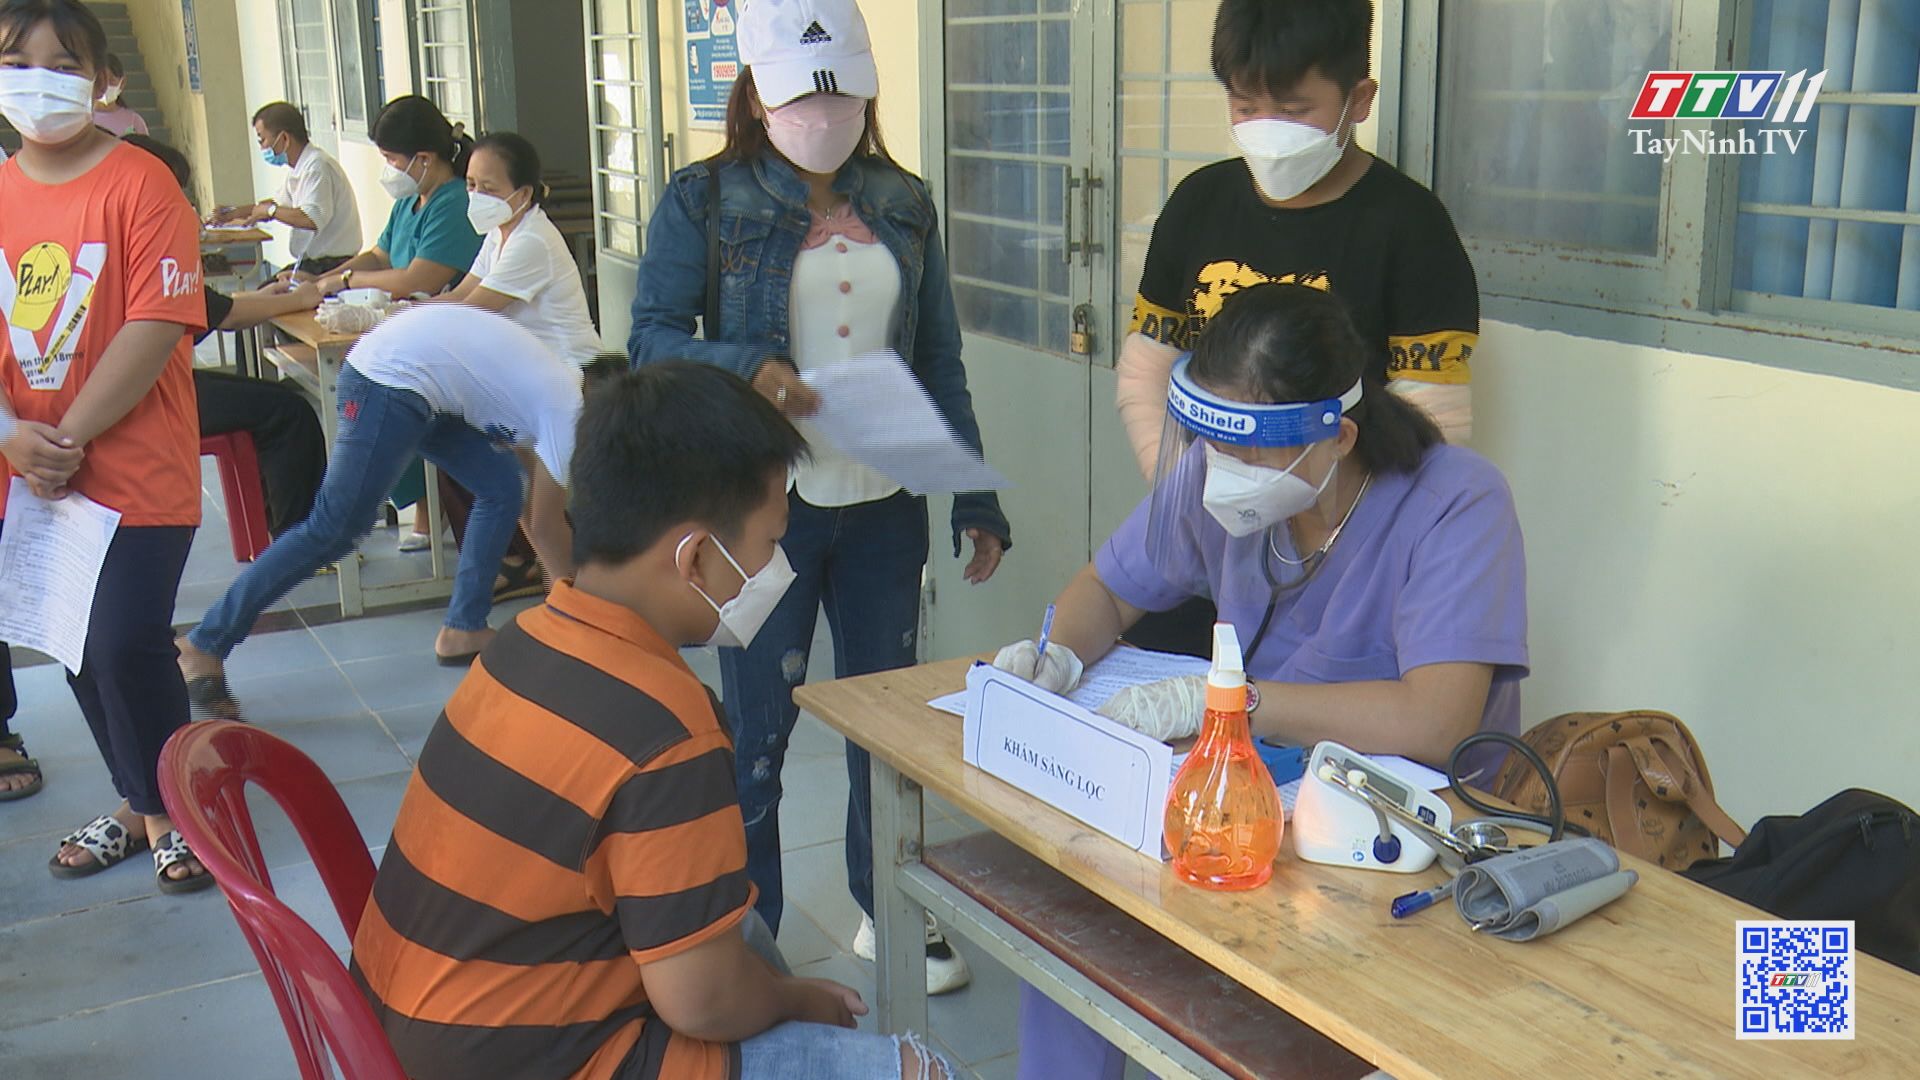 Triển khai tiêm vaccine phòng Covid-19 cho trẻ em từ 5 đến dưới 12 tuổi tại Tây Ninh | TayNinhTV